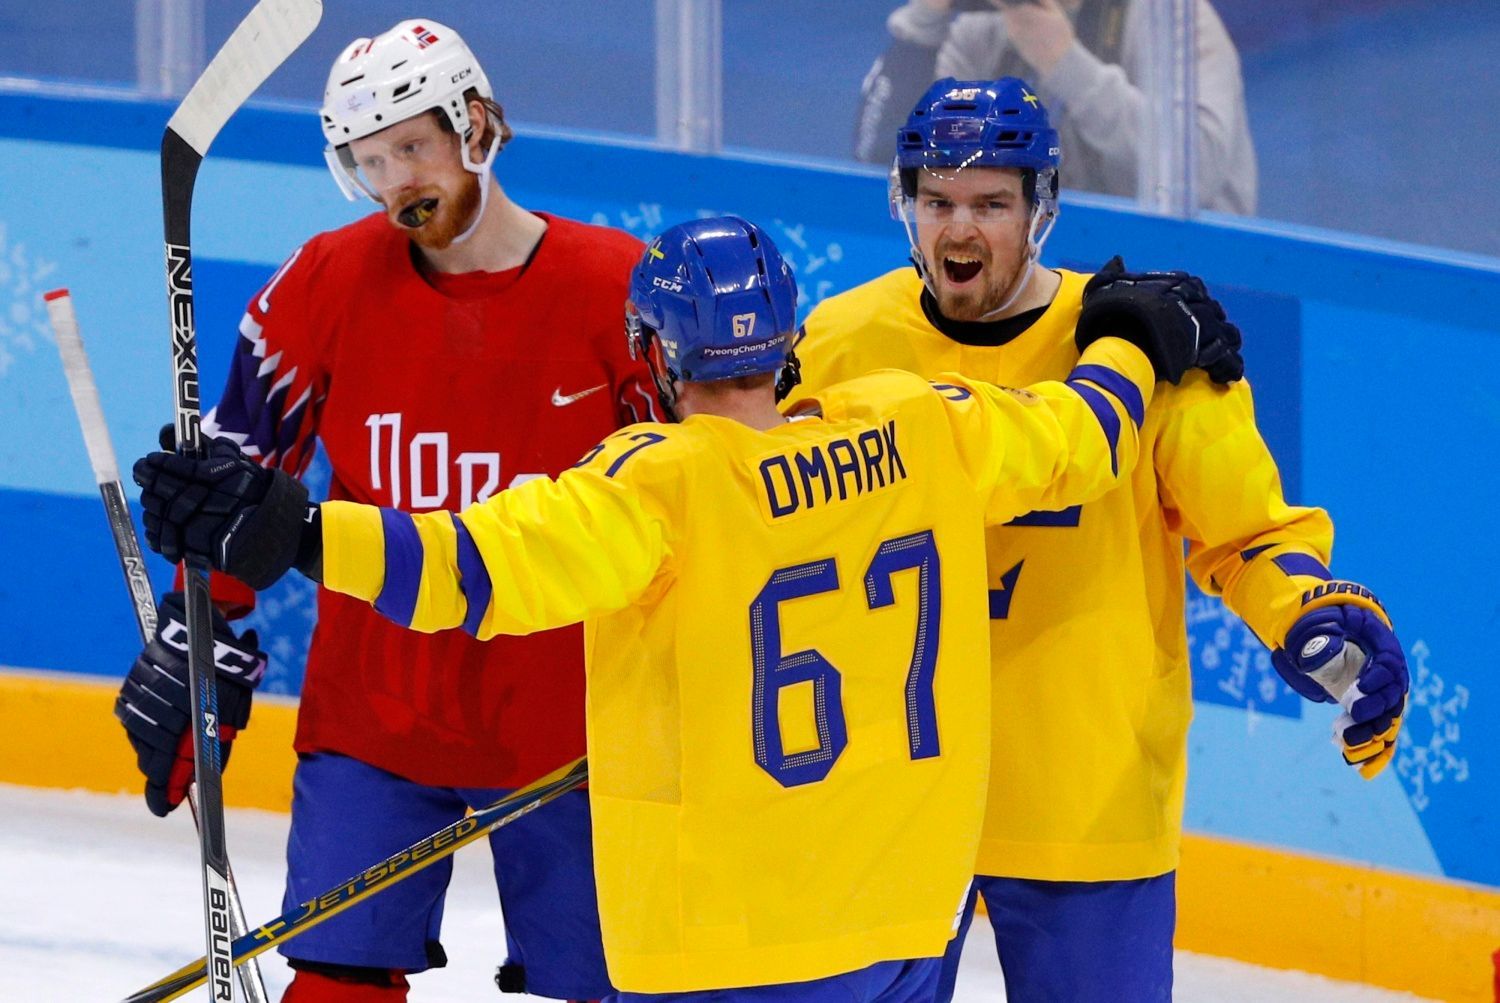 Švédští hokejisté Linus Omark a Anton Lander slaví gól v síti Norska.